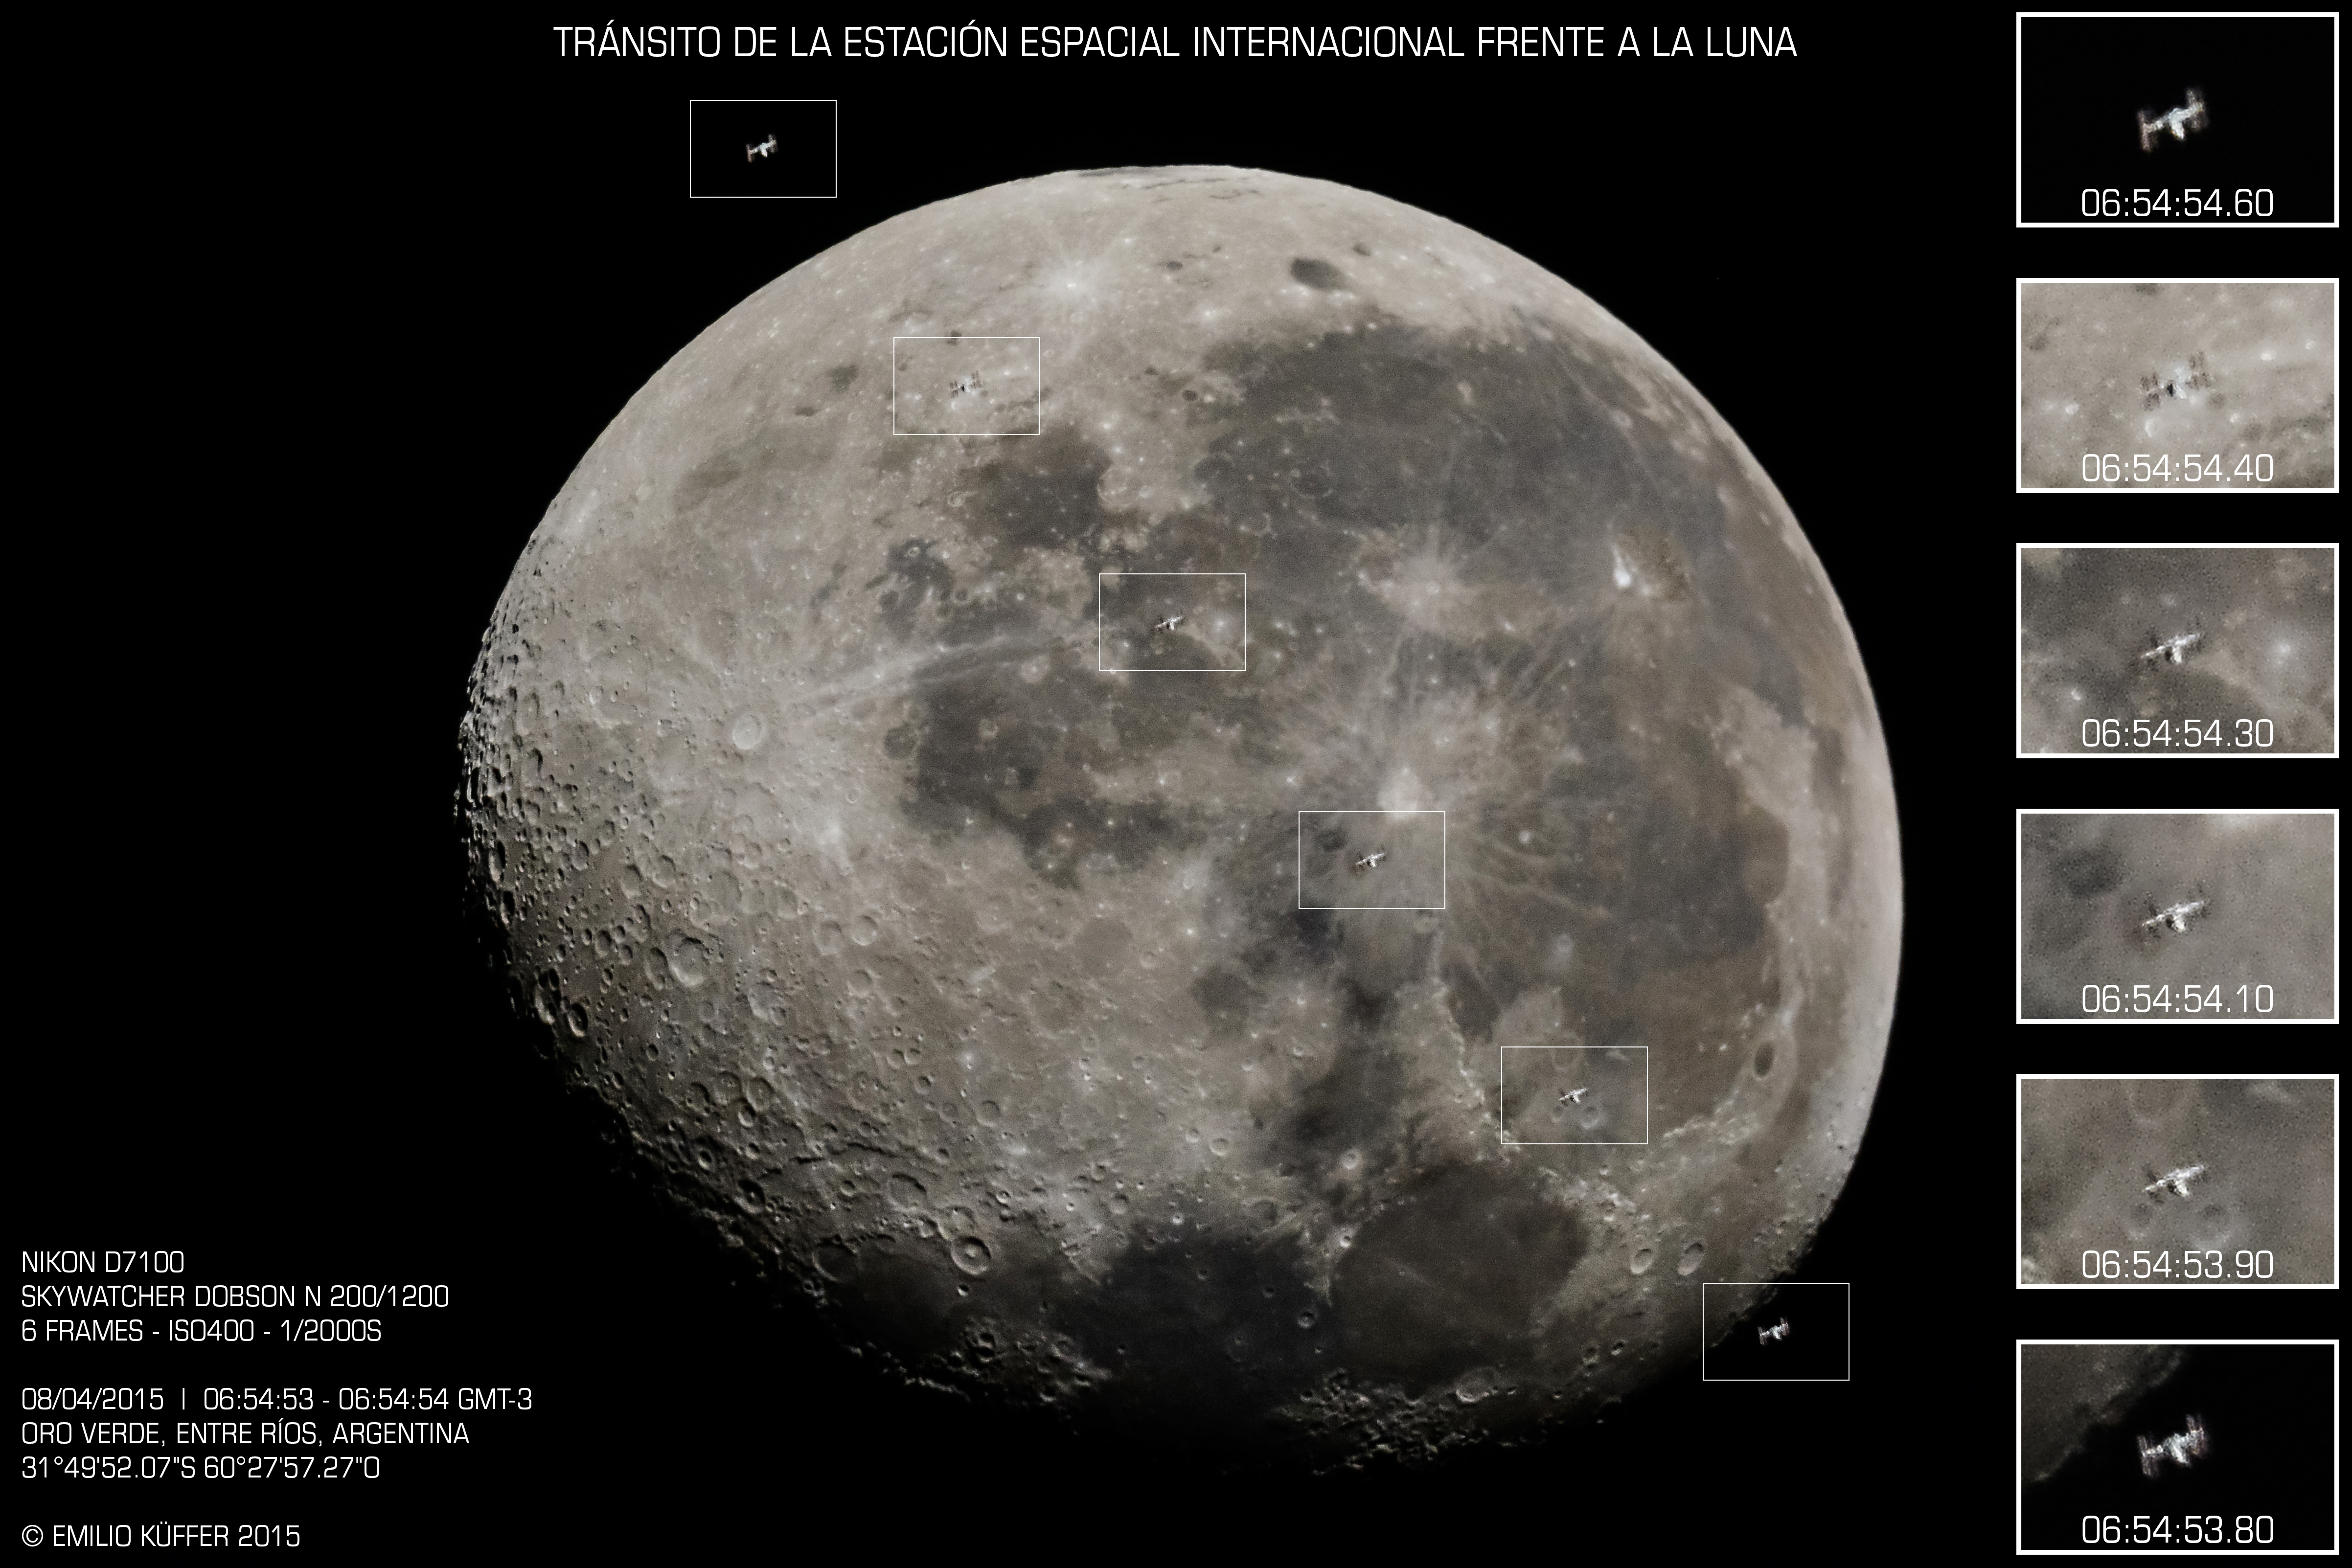 (Español) Estación Espacial Internacional transitando la Luna